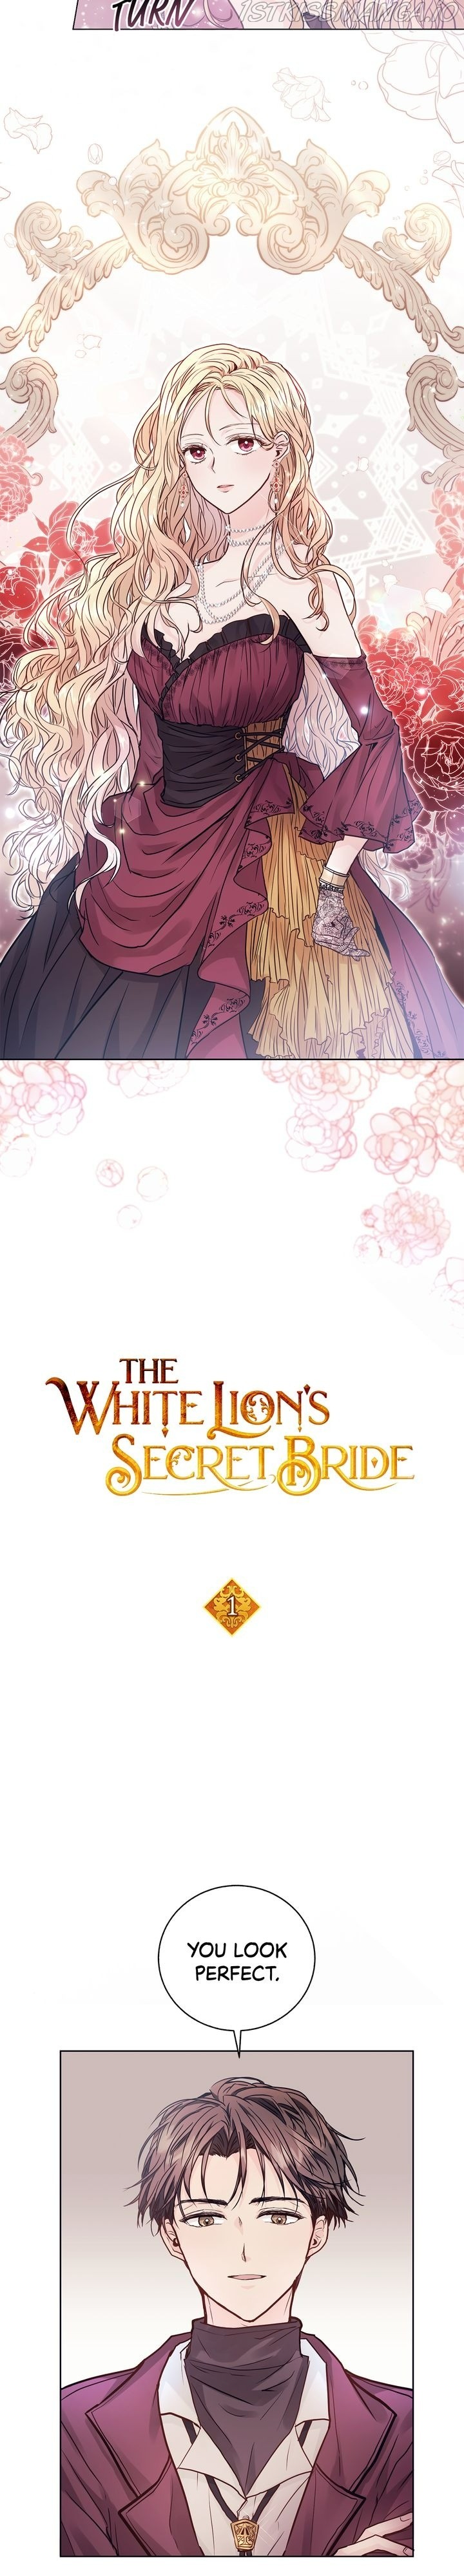 The White Lion’S Secret Bride - Page 2